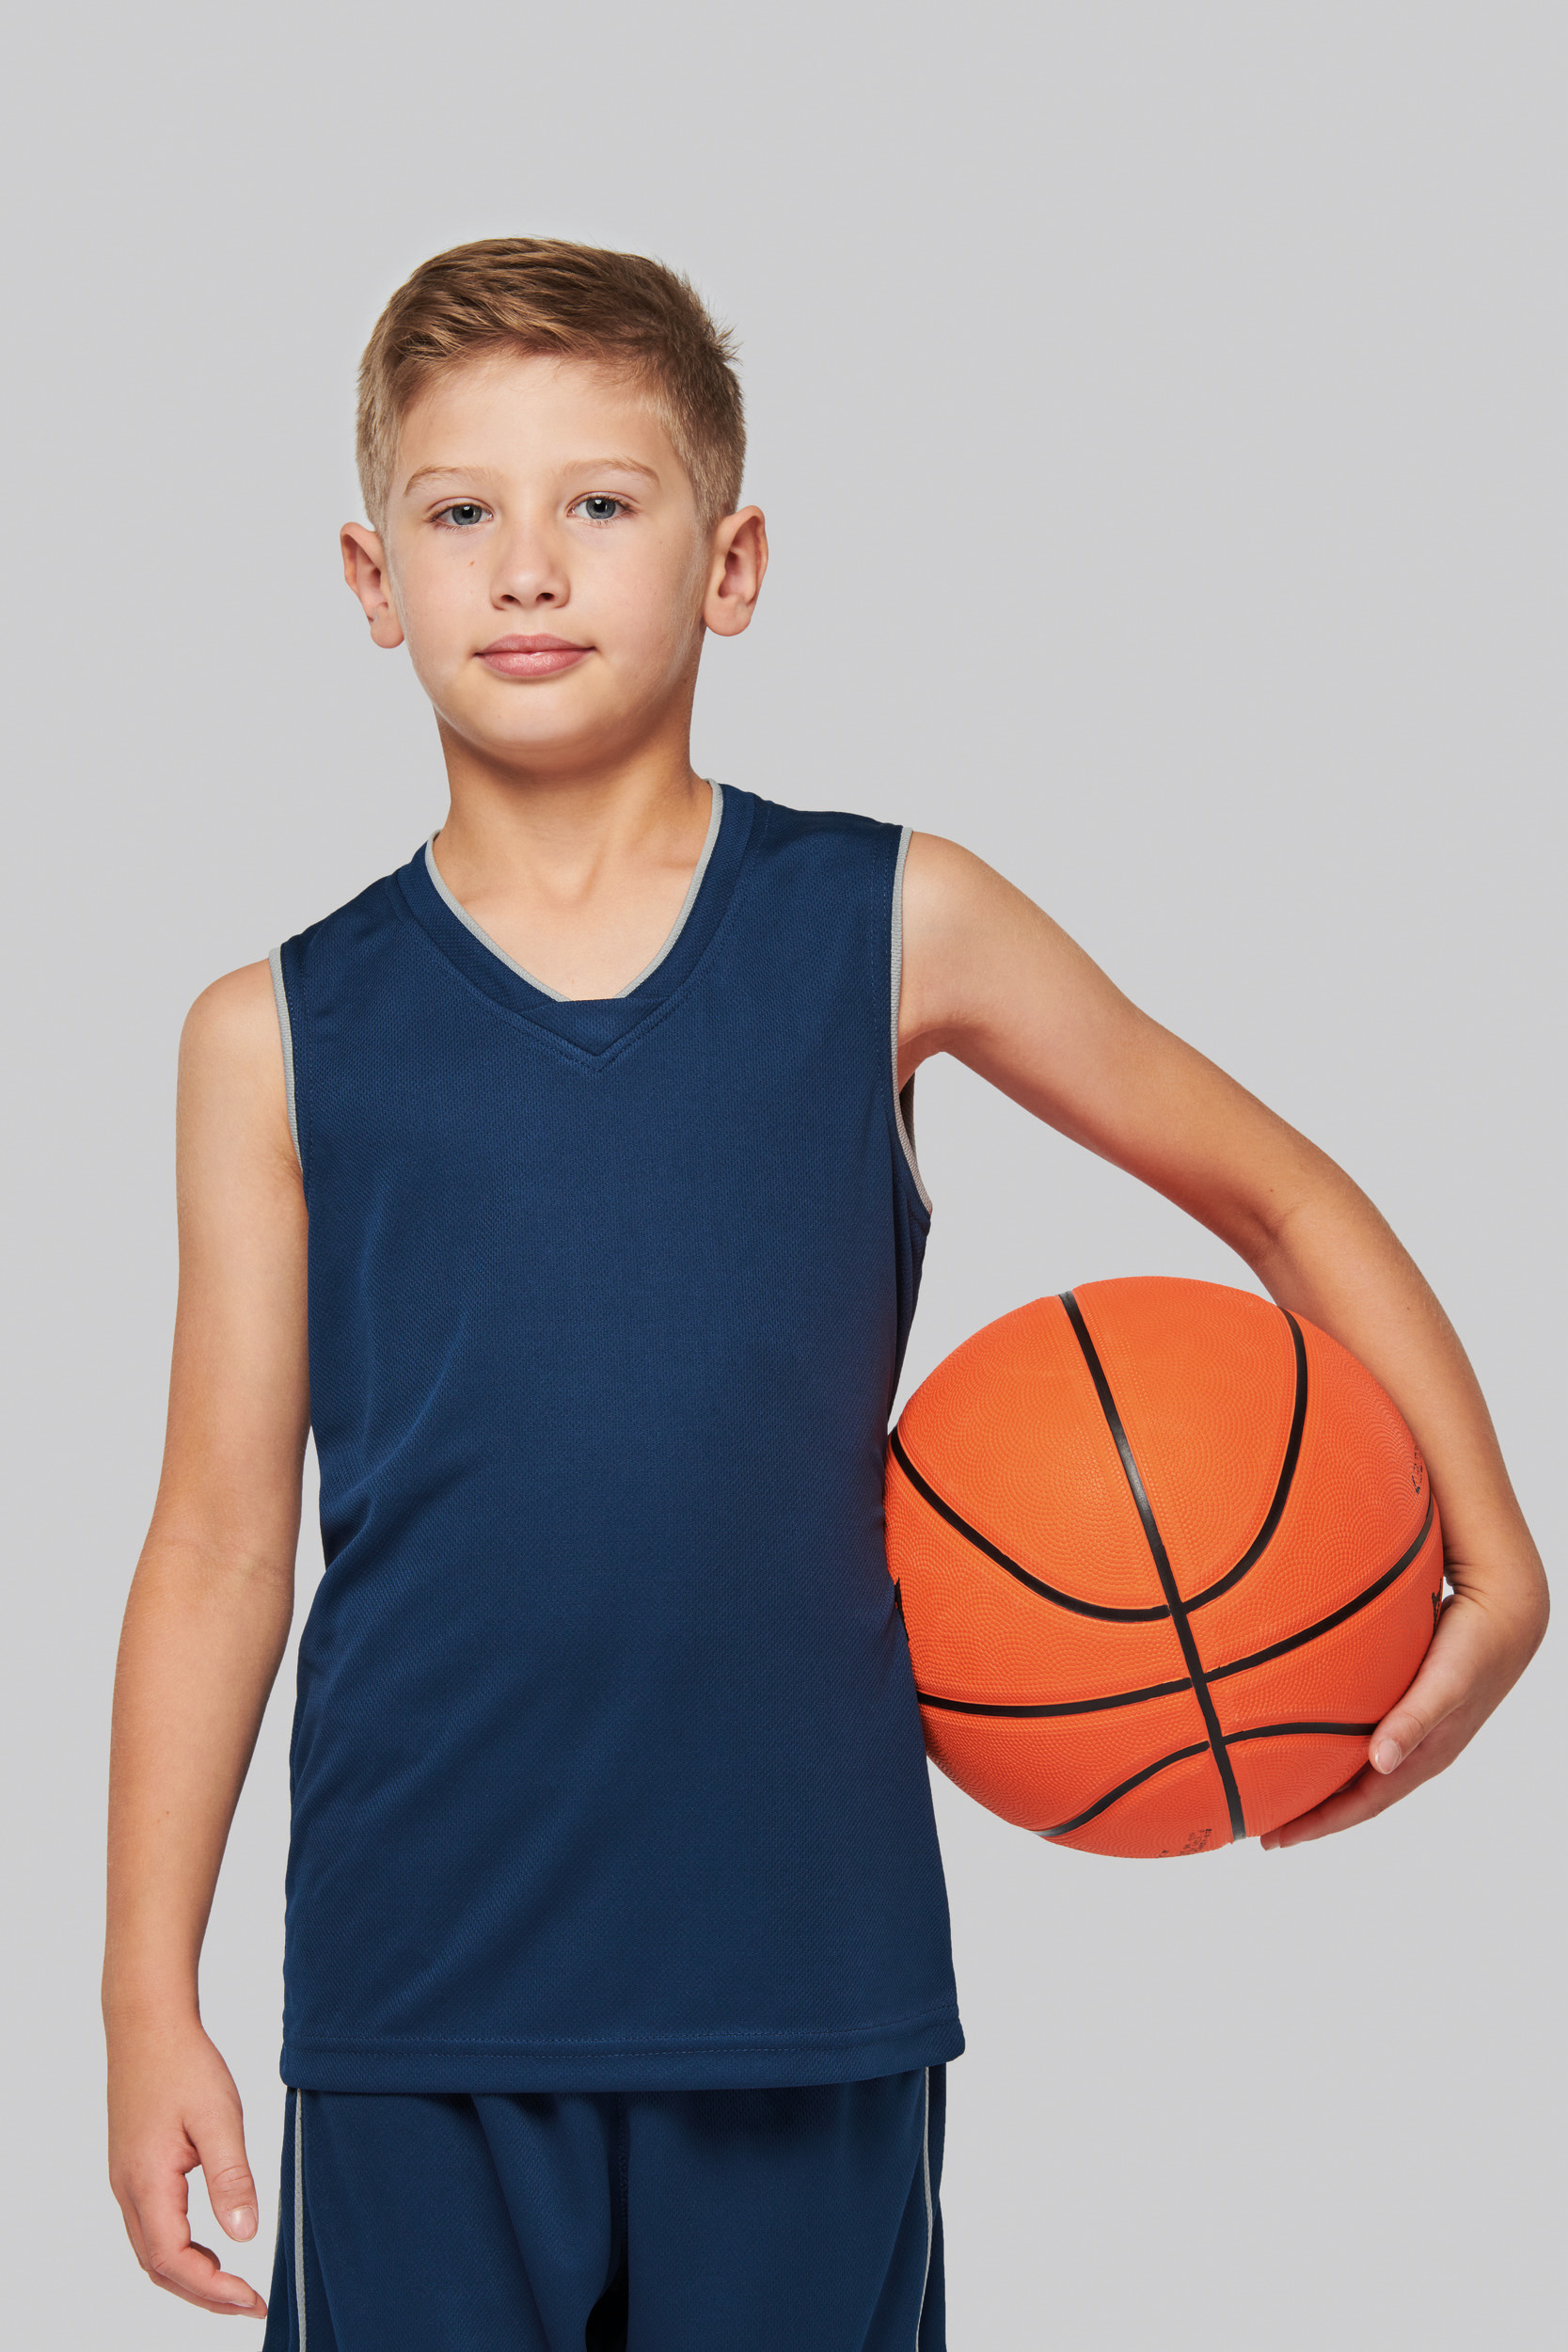 Estadísticas congelado Tomar conciencia Camiseta baloncesto niños